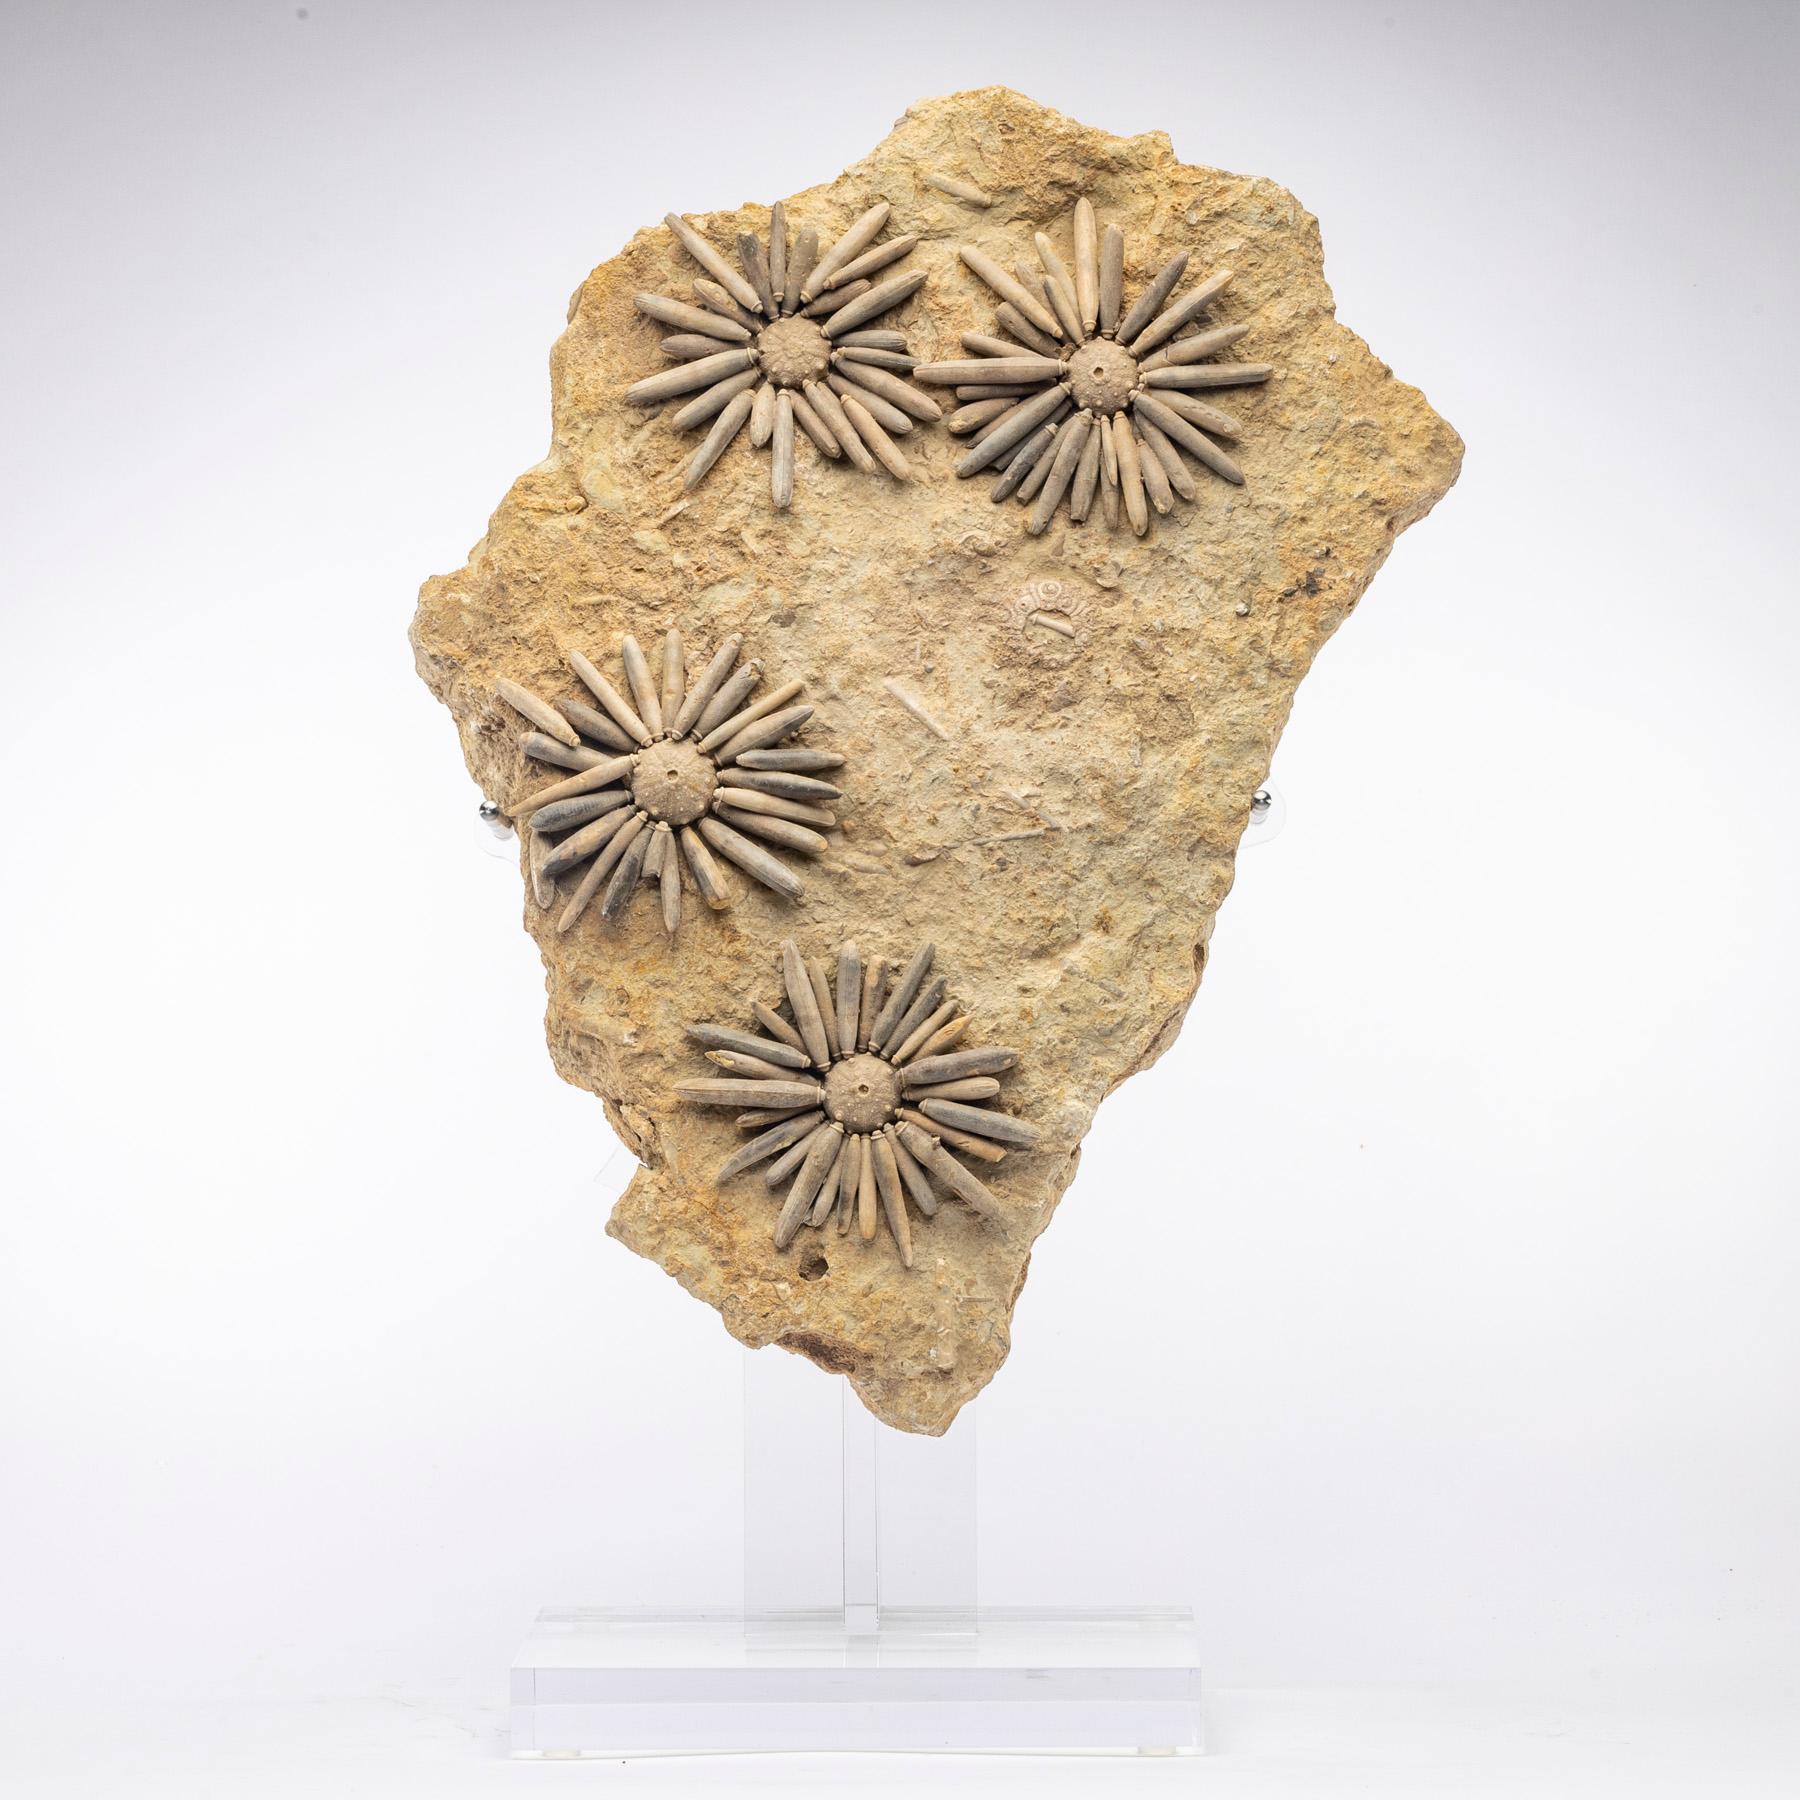 Fossil sea urchin.

Origin: Morocco.
Period: Jurassic (170 Million Years old).